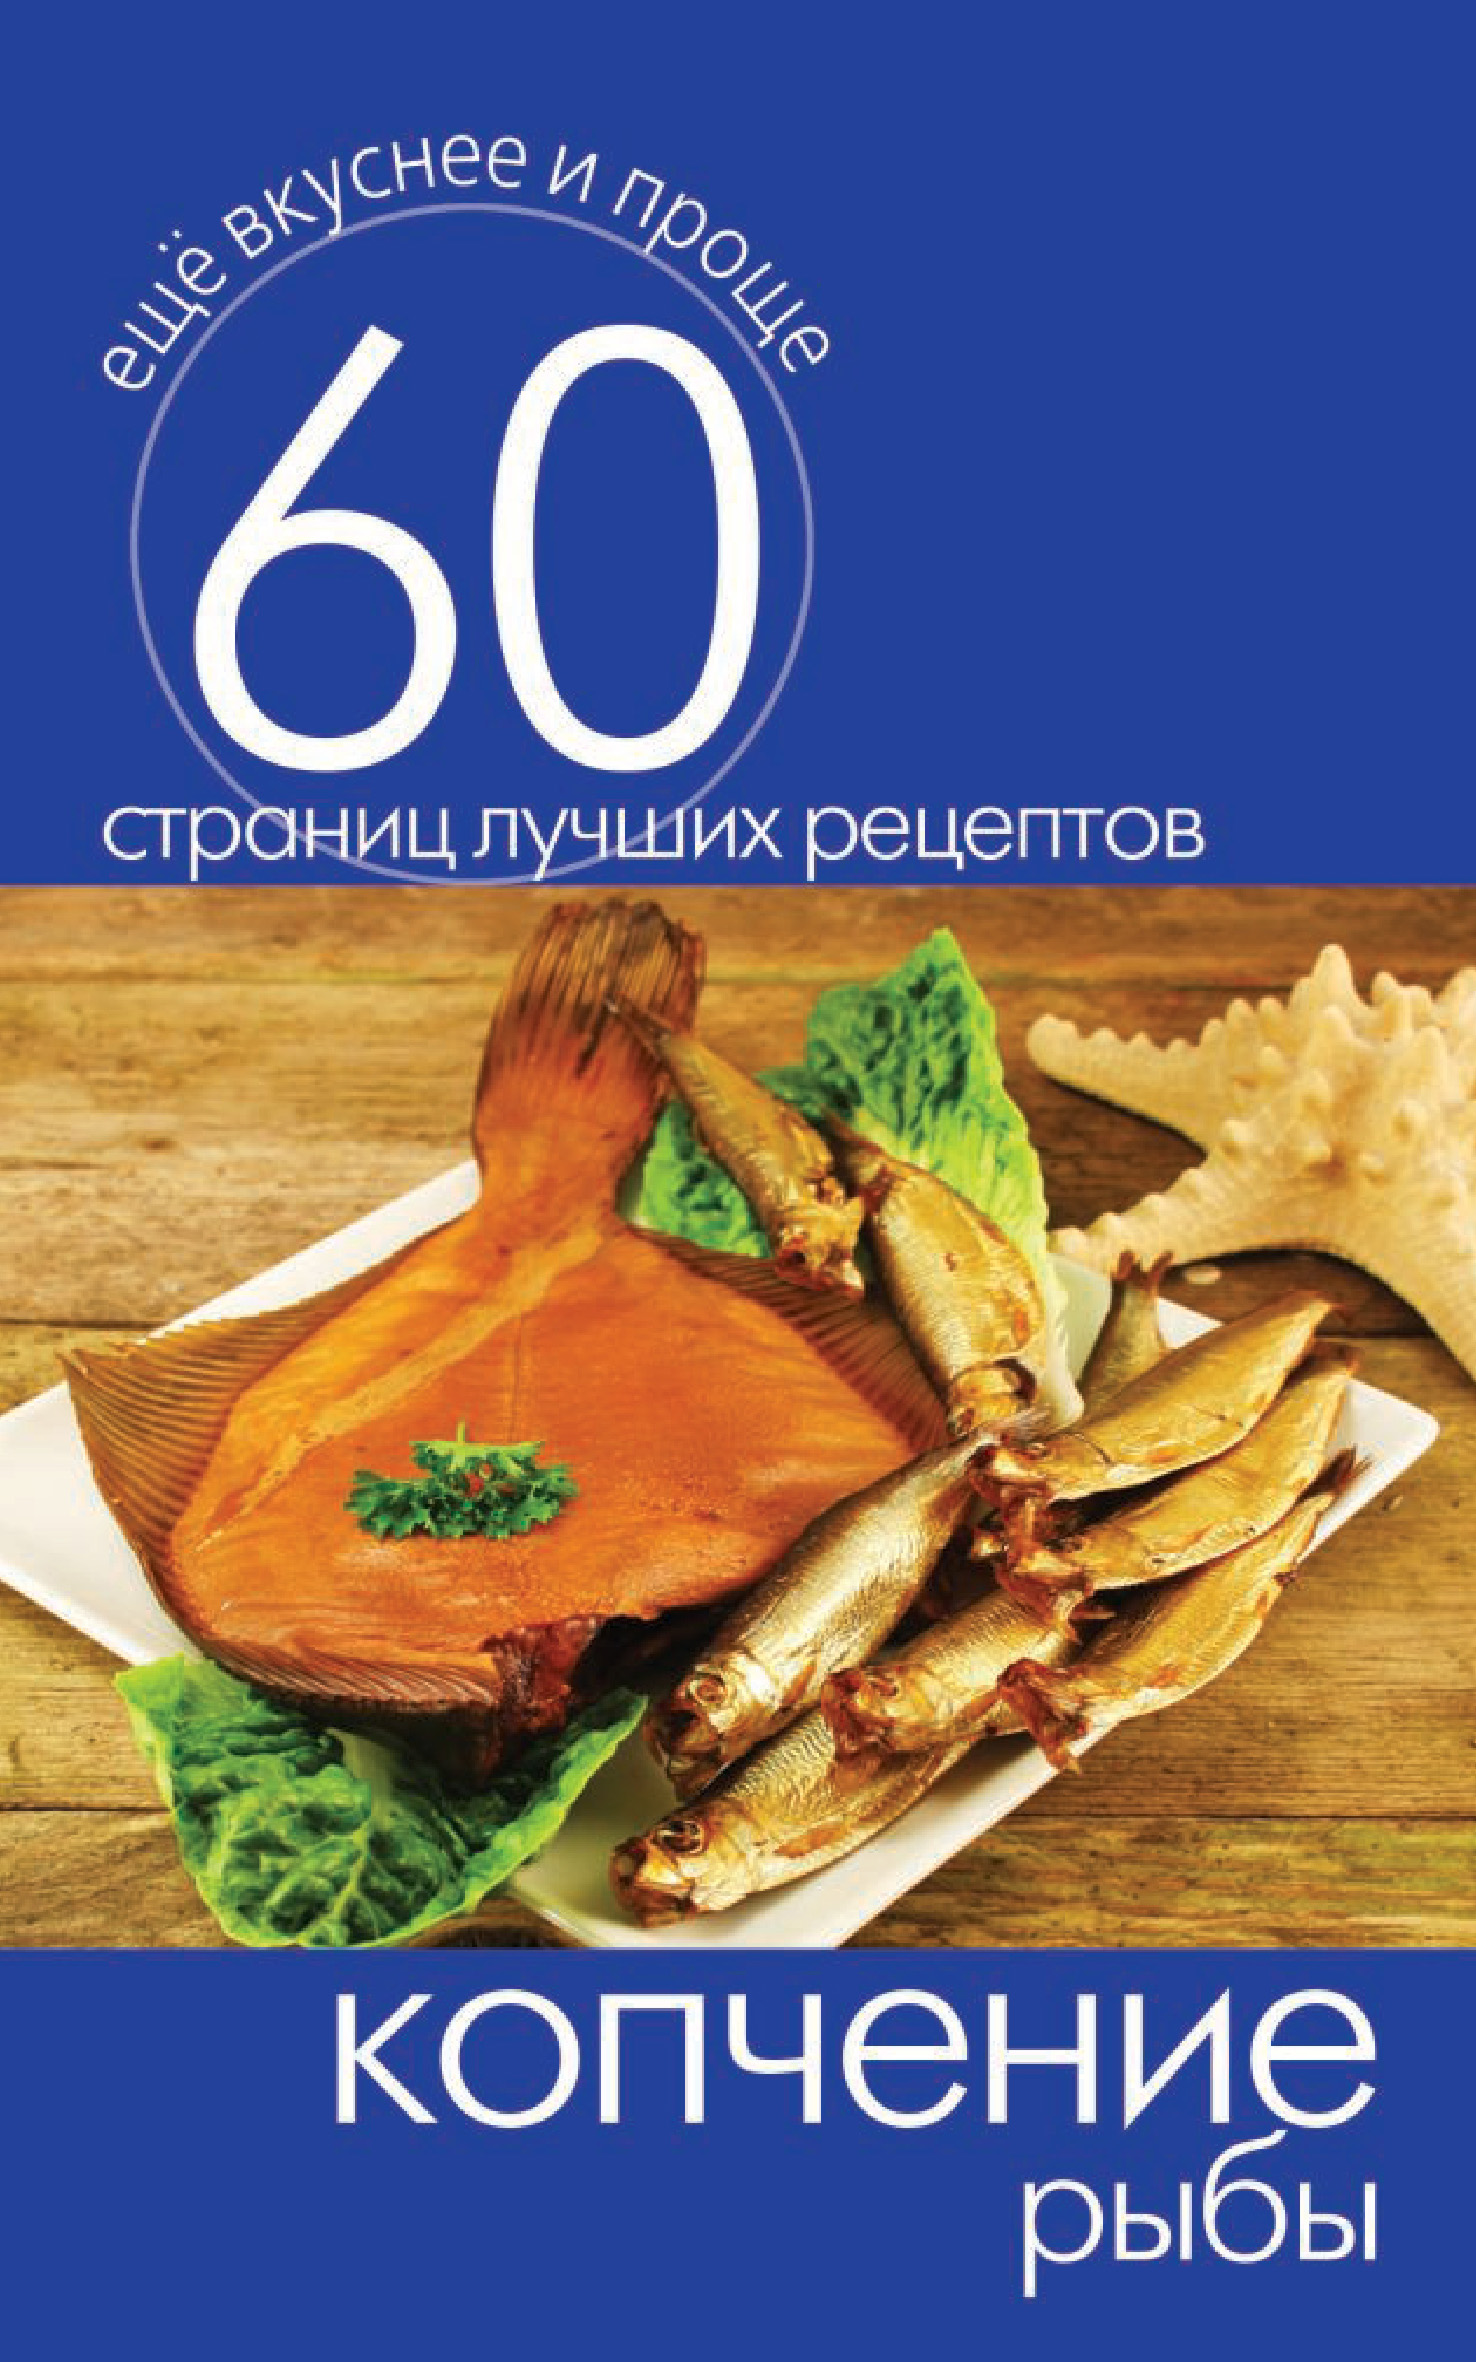 Книга Копчение рыбы из серии Ещё вкуснее и проще, созданная Сергей Кашин, может относится к жанру Кулинария. Стоимость электронной книги Копчение рыбы с идентификатором 8106821 составляет 29.00 руб.